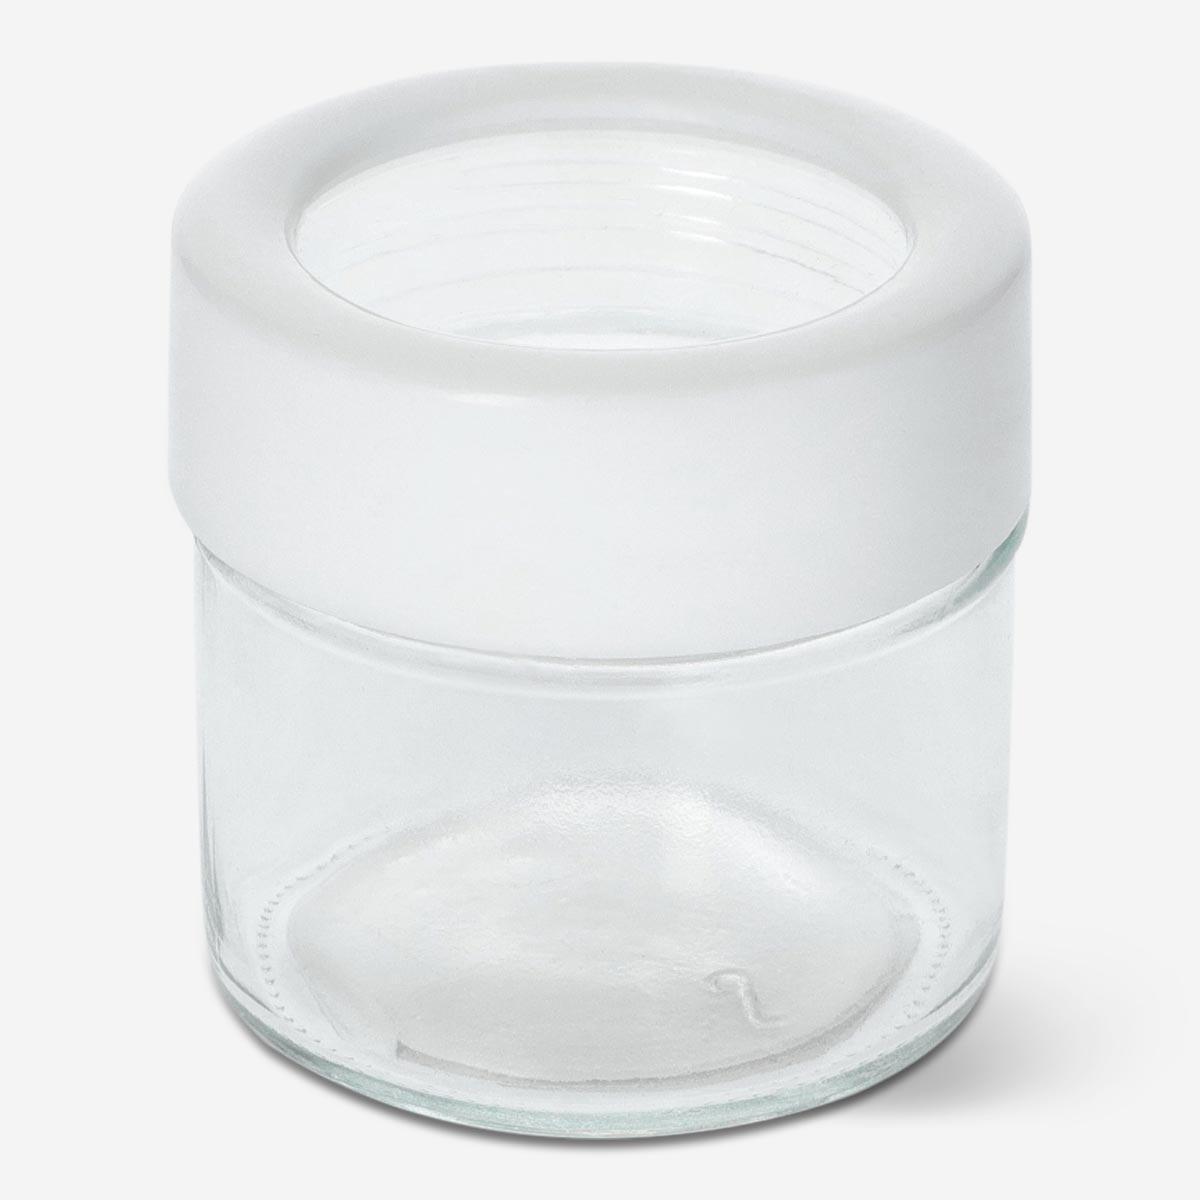 White salt shaker